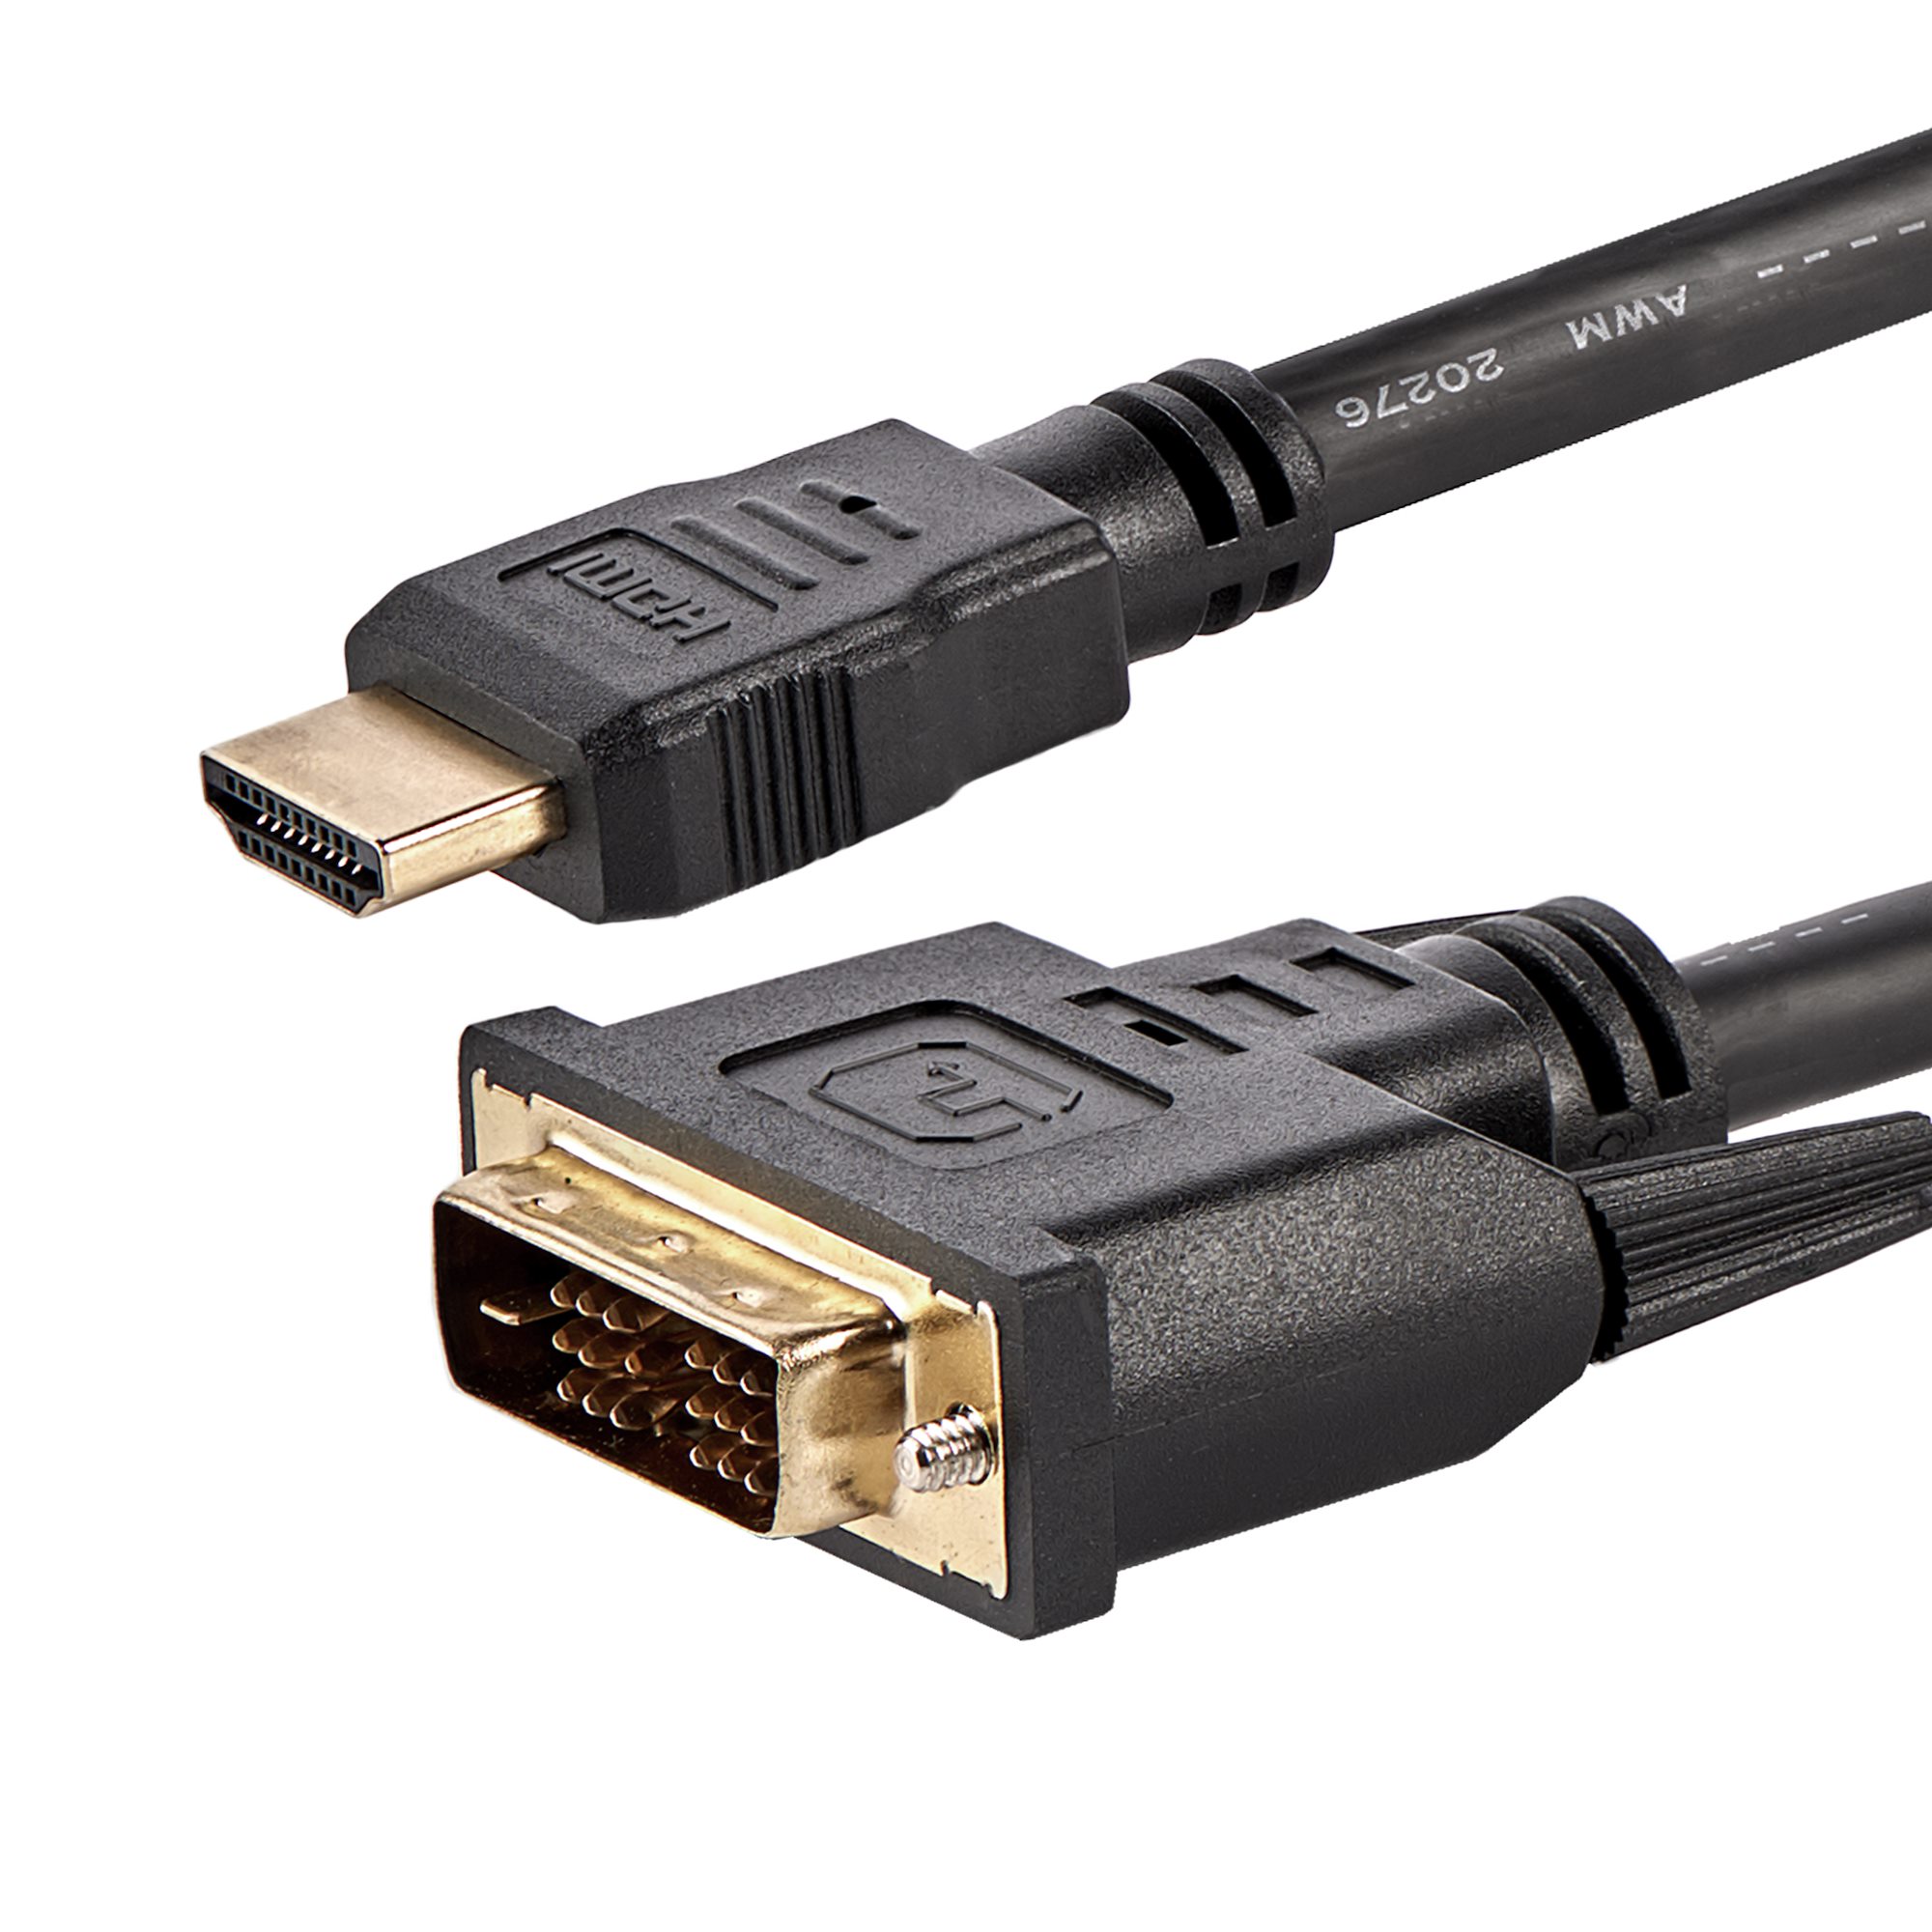 De Verdad No puedo leer ni escribir Judías verdes Cable Adaptador HDMI a DVI-D de 1.8m - Cables HDMI® y Adaptadores HDMI |  StarTech.com España